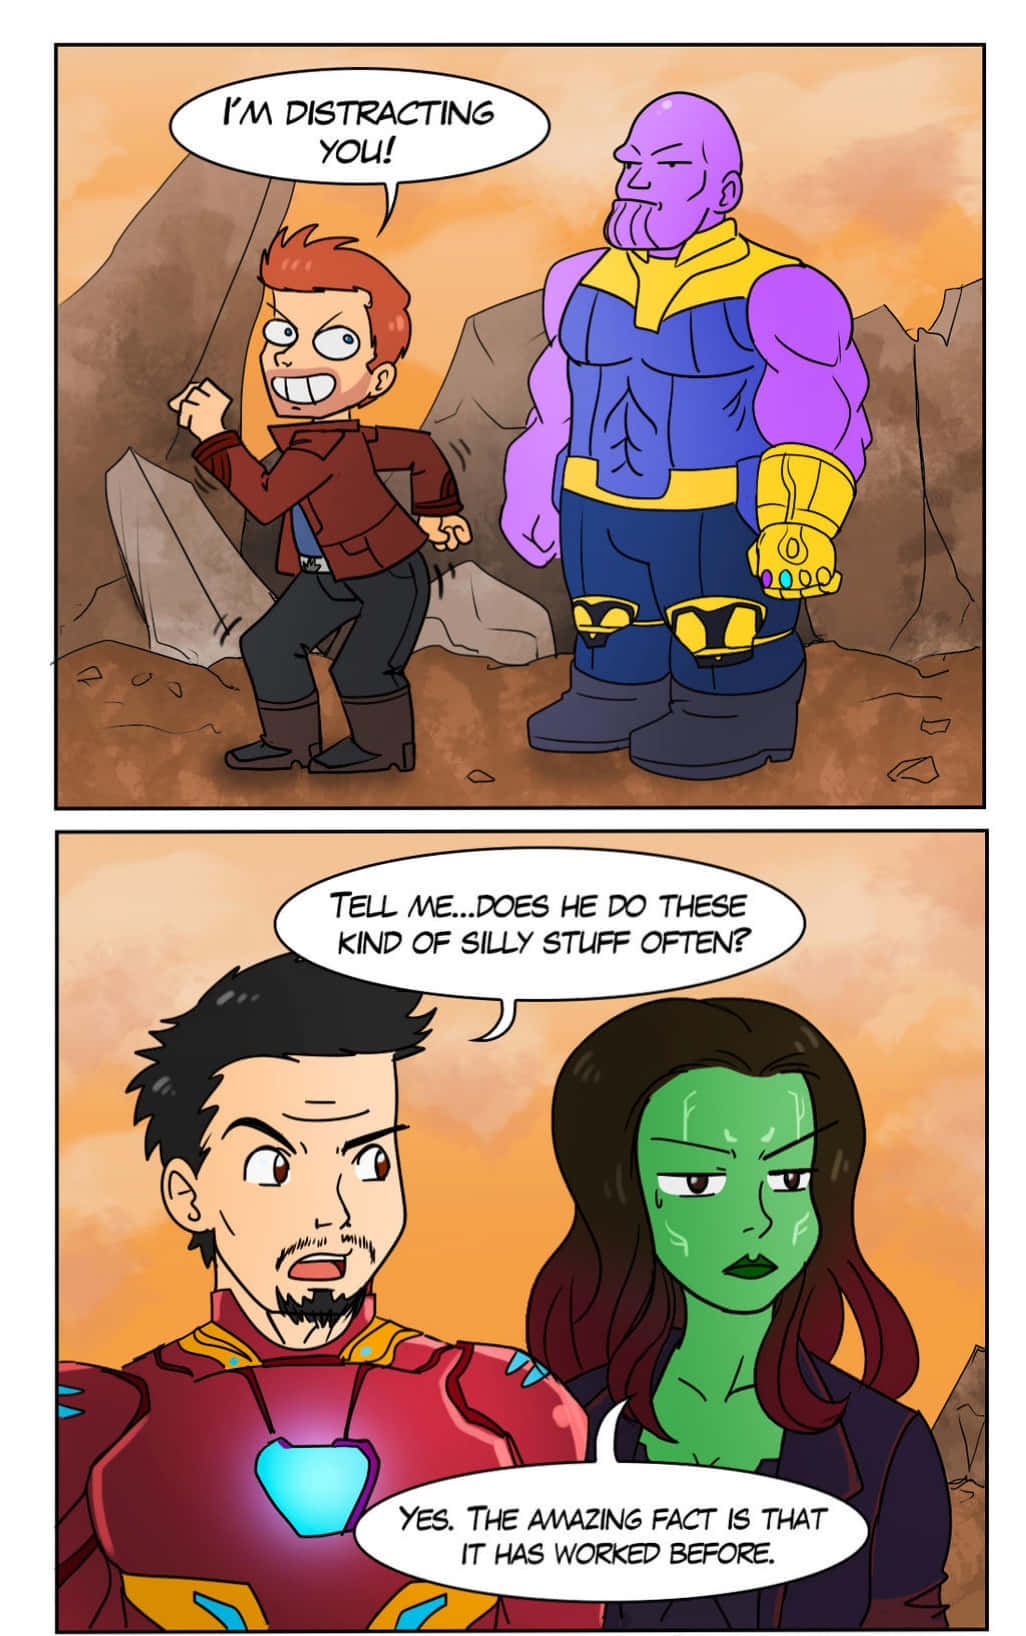 Divertidatira Cómica De Marvel Que Distrae La Imagen De Thanos